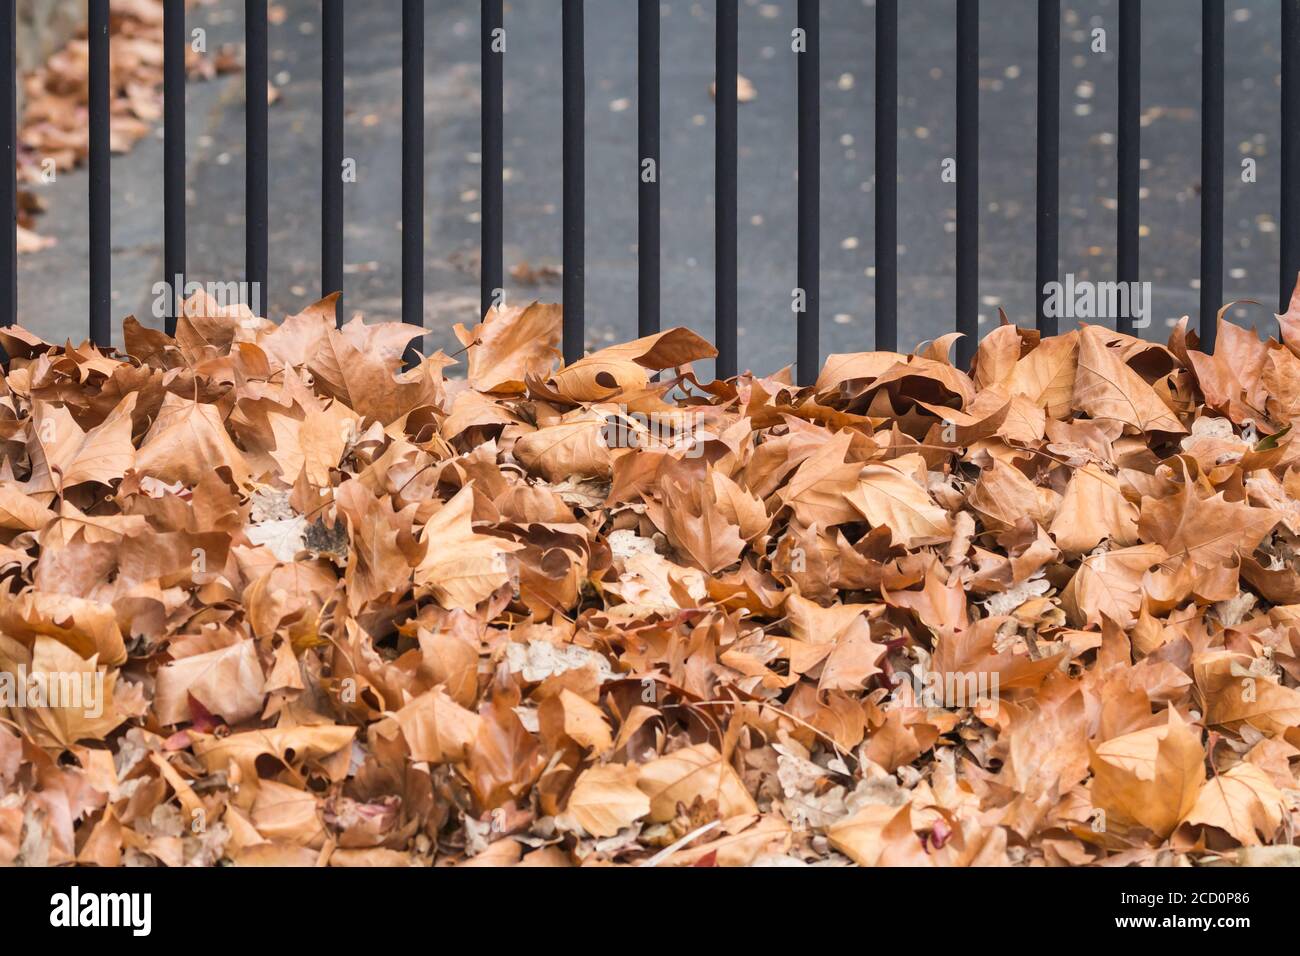 Hojas de roble viejo y marrón, de cerca, barrido contra una valla de metal durante la temporada de otoño concepto de clima, clima y estaciones Foto de stock